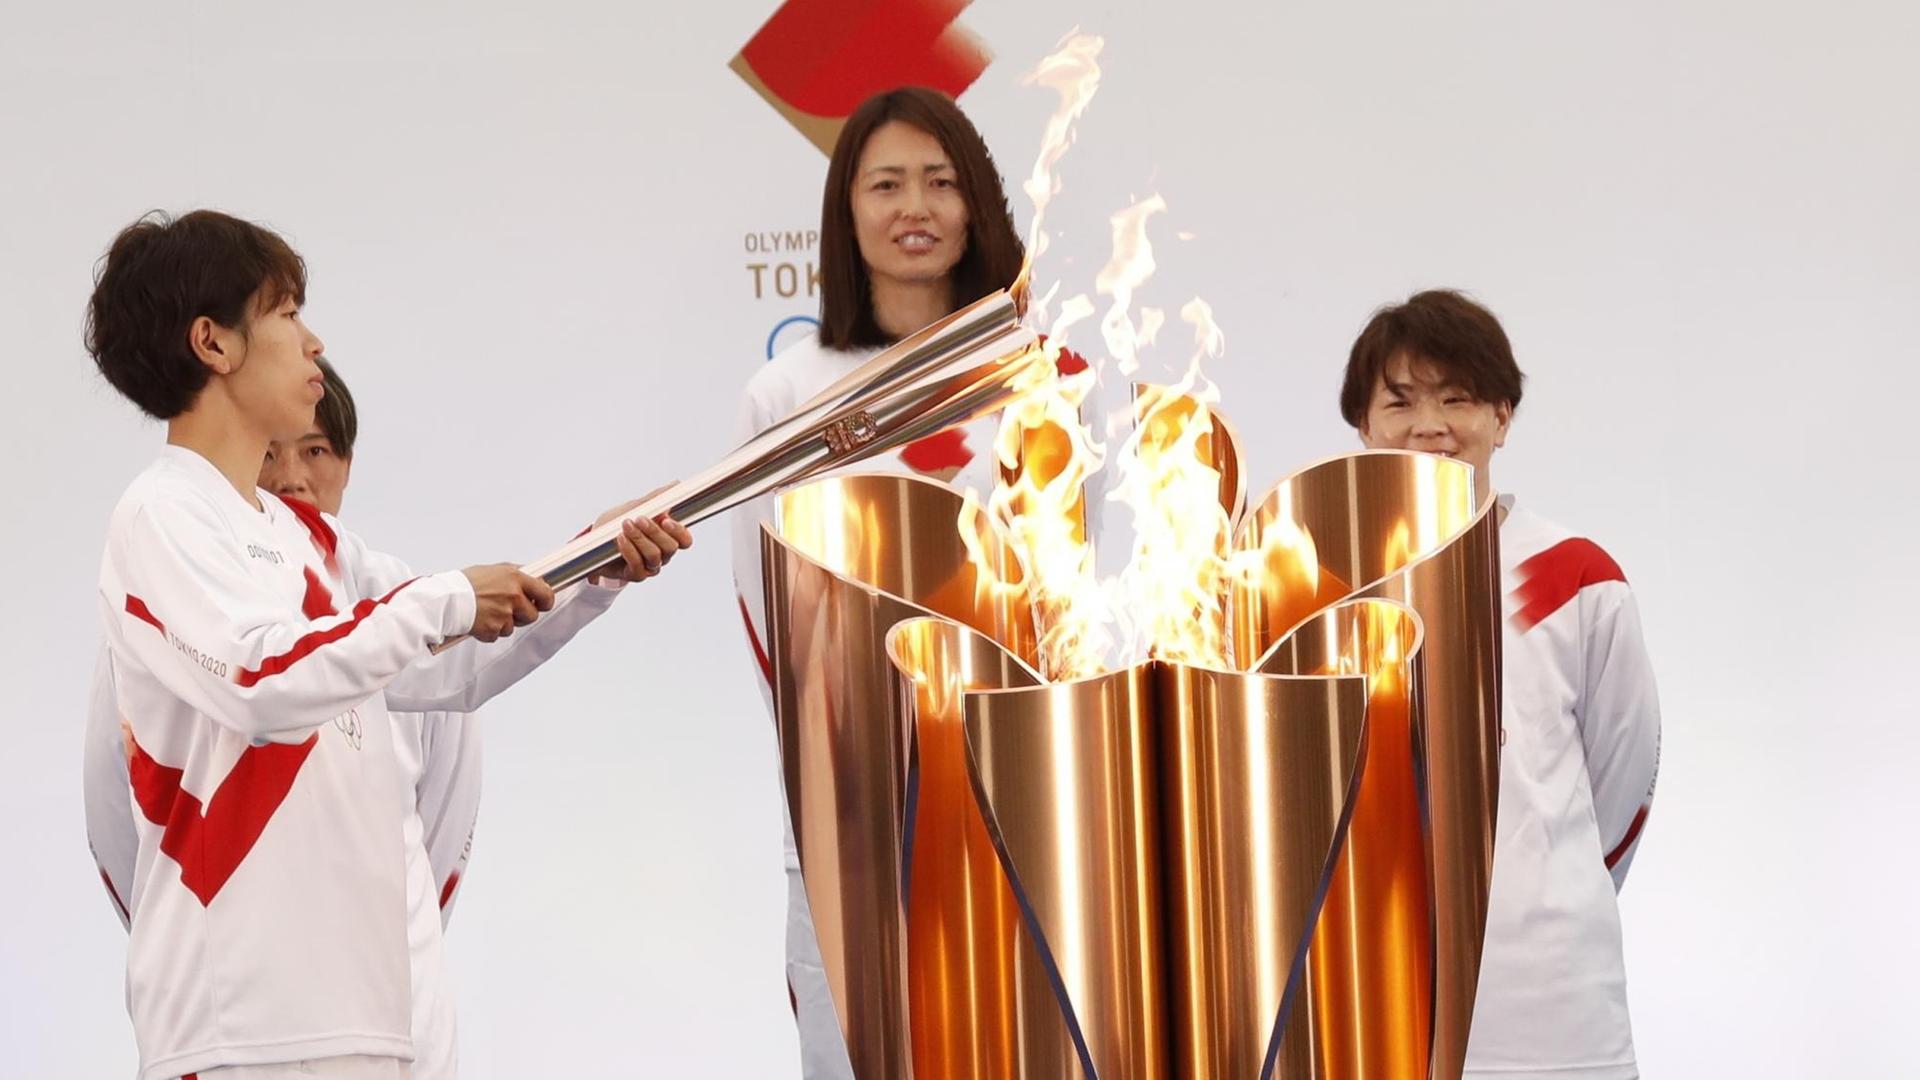 Die olympische Fackel wird von einem Mitglied der japanischen Frauen-Fußball-National-Mannschaft angezündet.